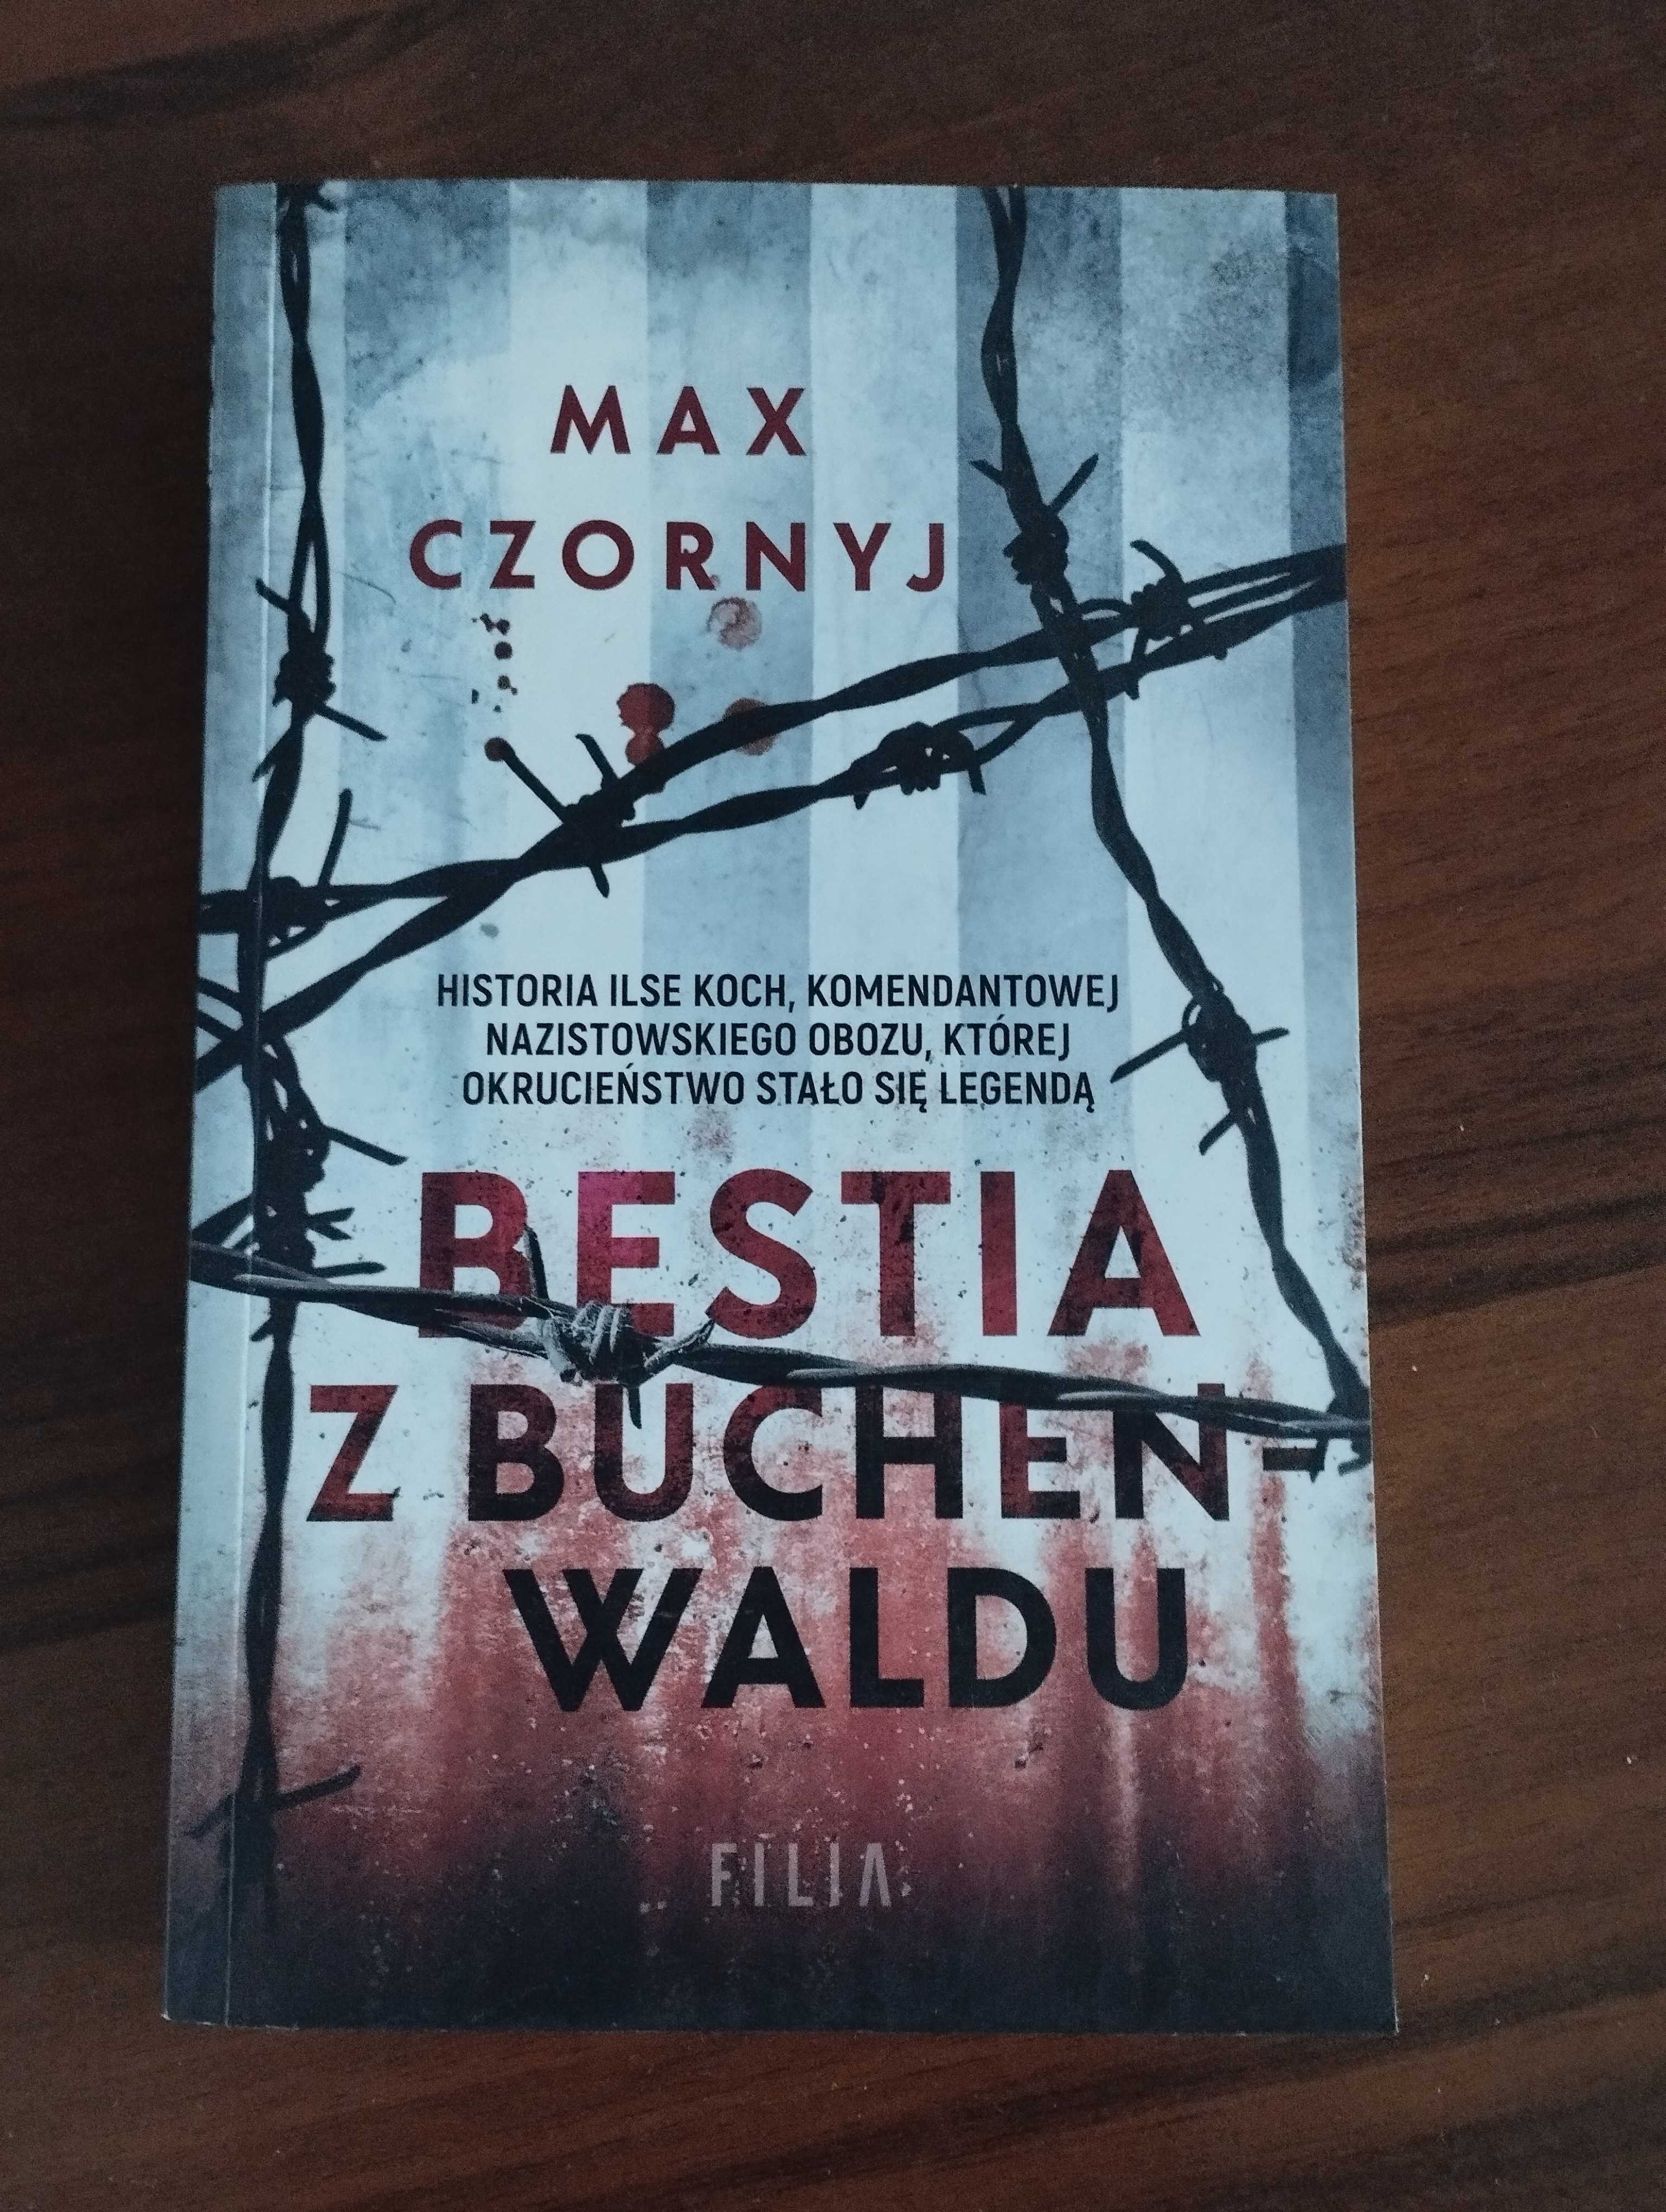 Sprzedam książkę "Bestia z Buchenwaldu" Max Czornyj